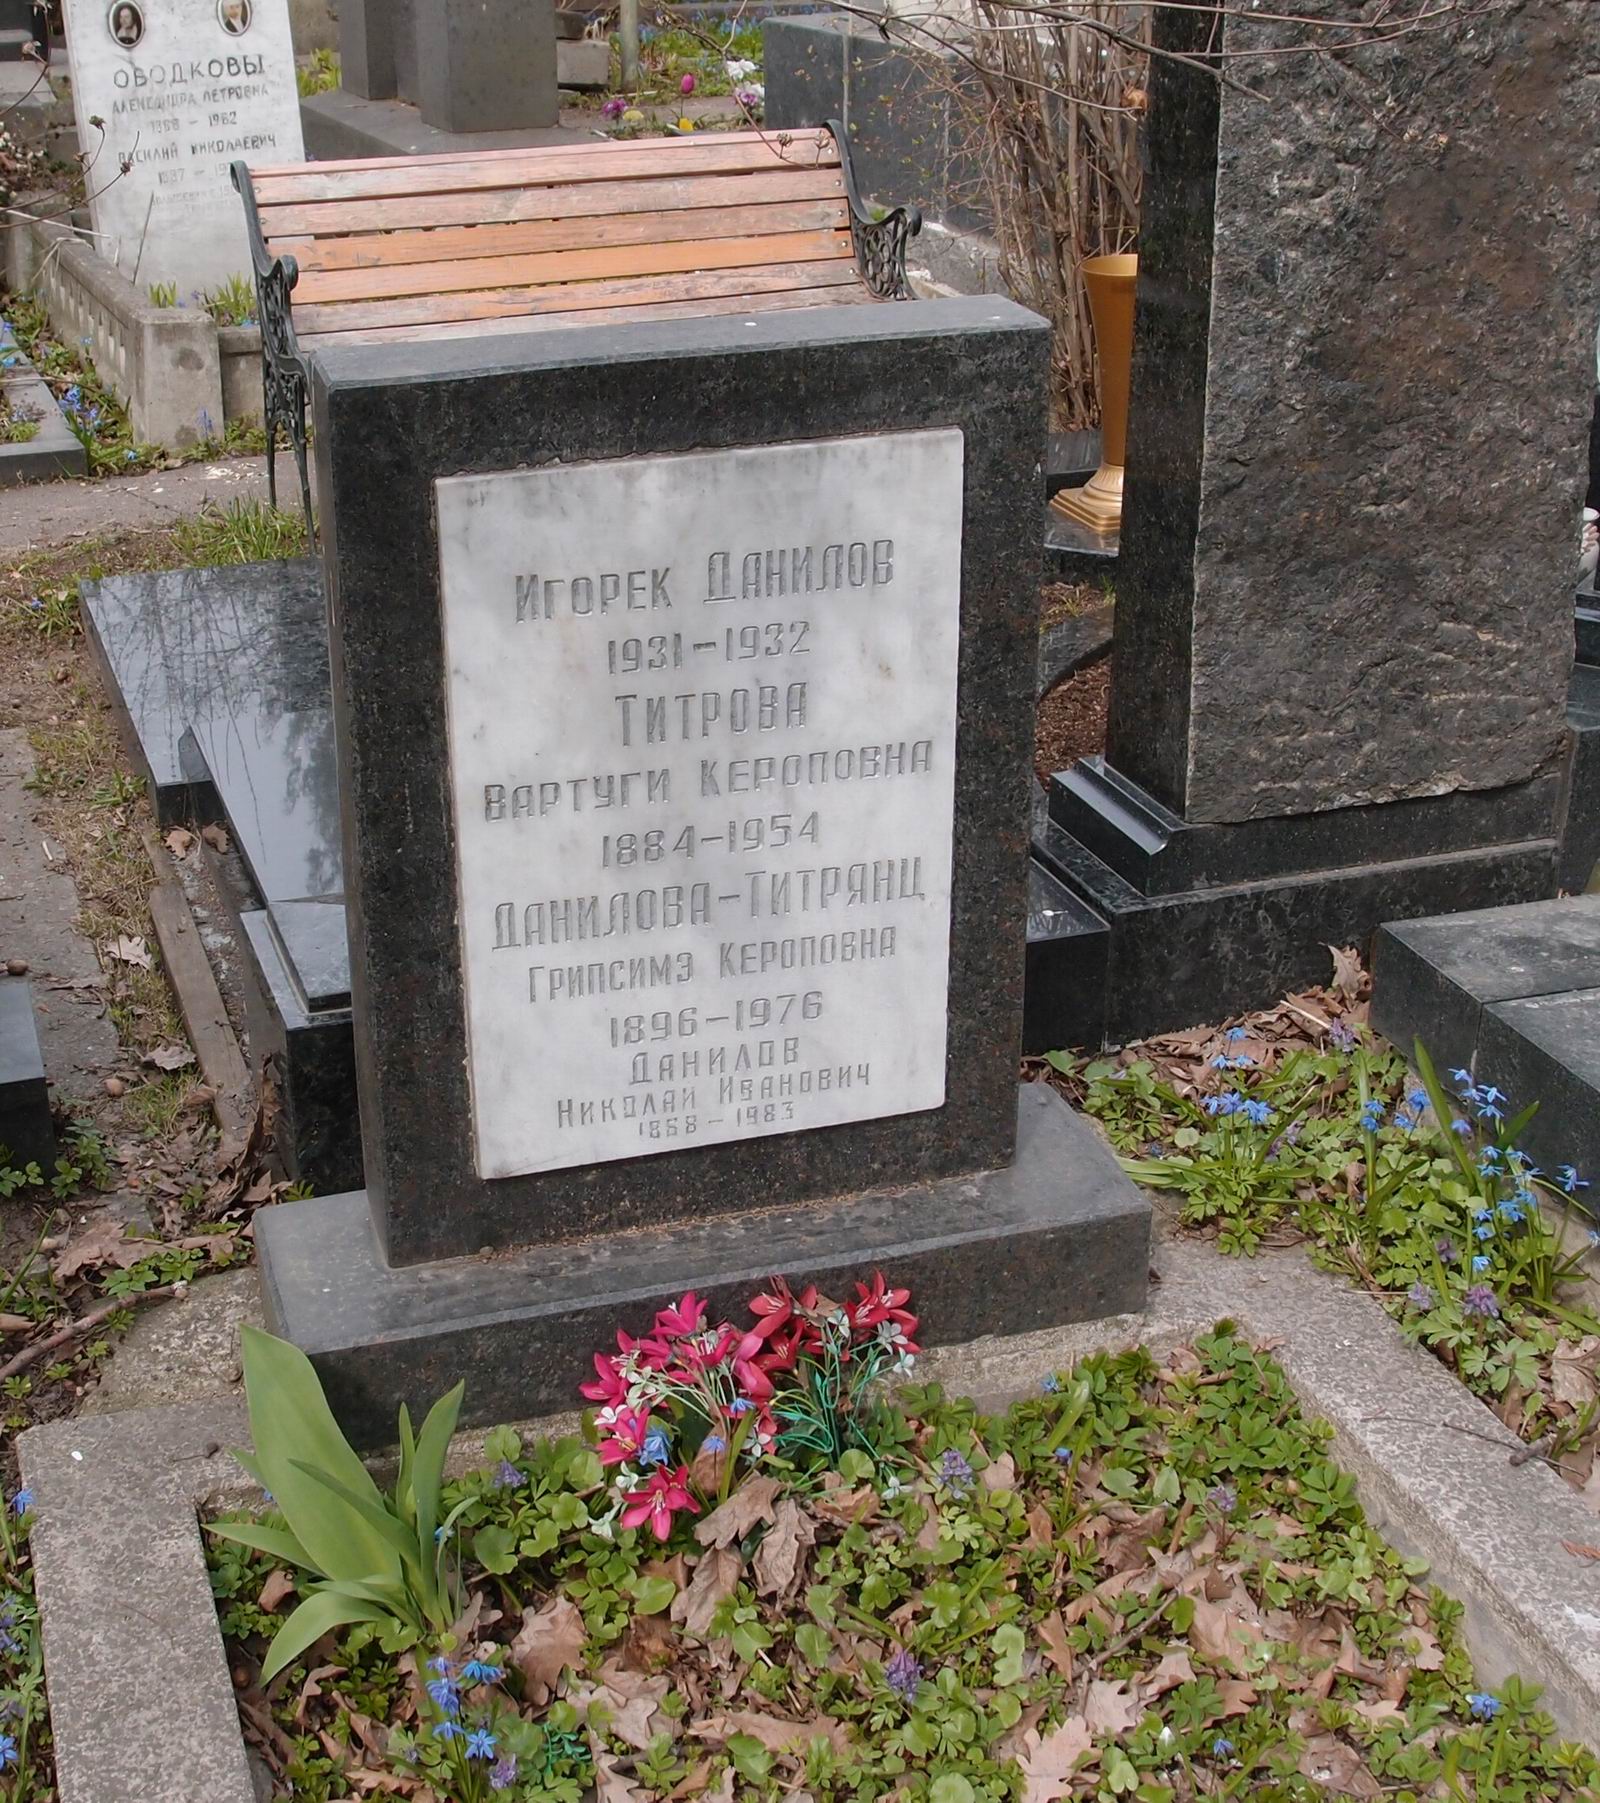 Памятник на могиле Даниловой-Титрянц Г.К. (1896-1976), на Новодевичьем кладбище (3-9-11).